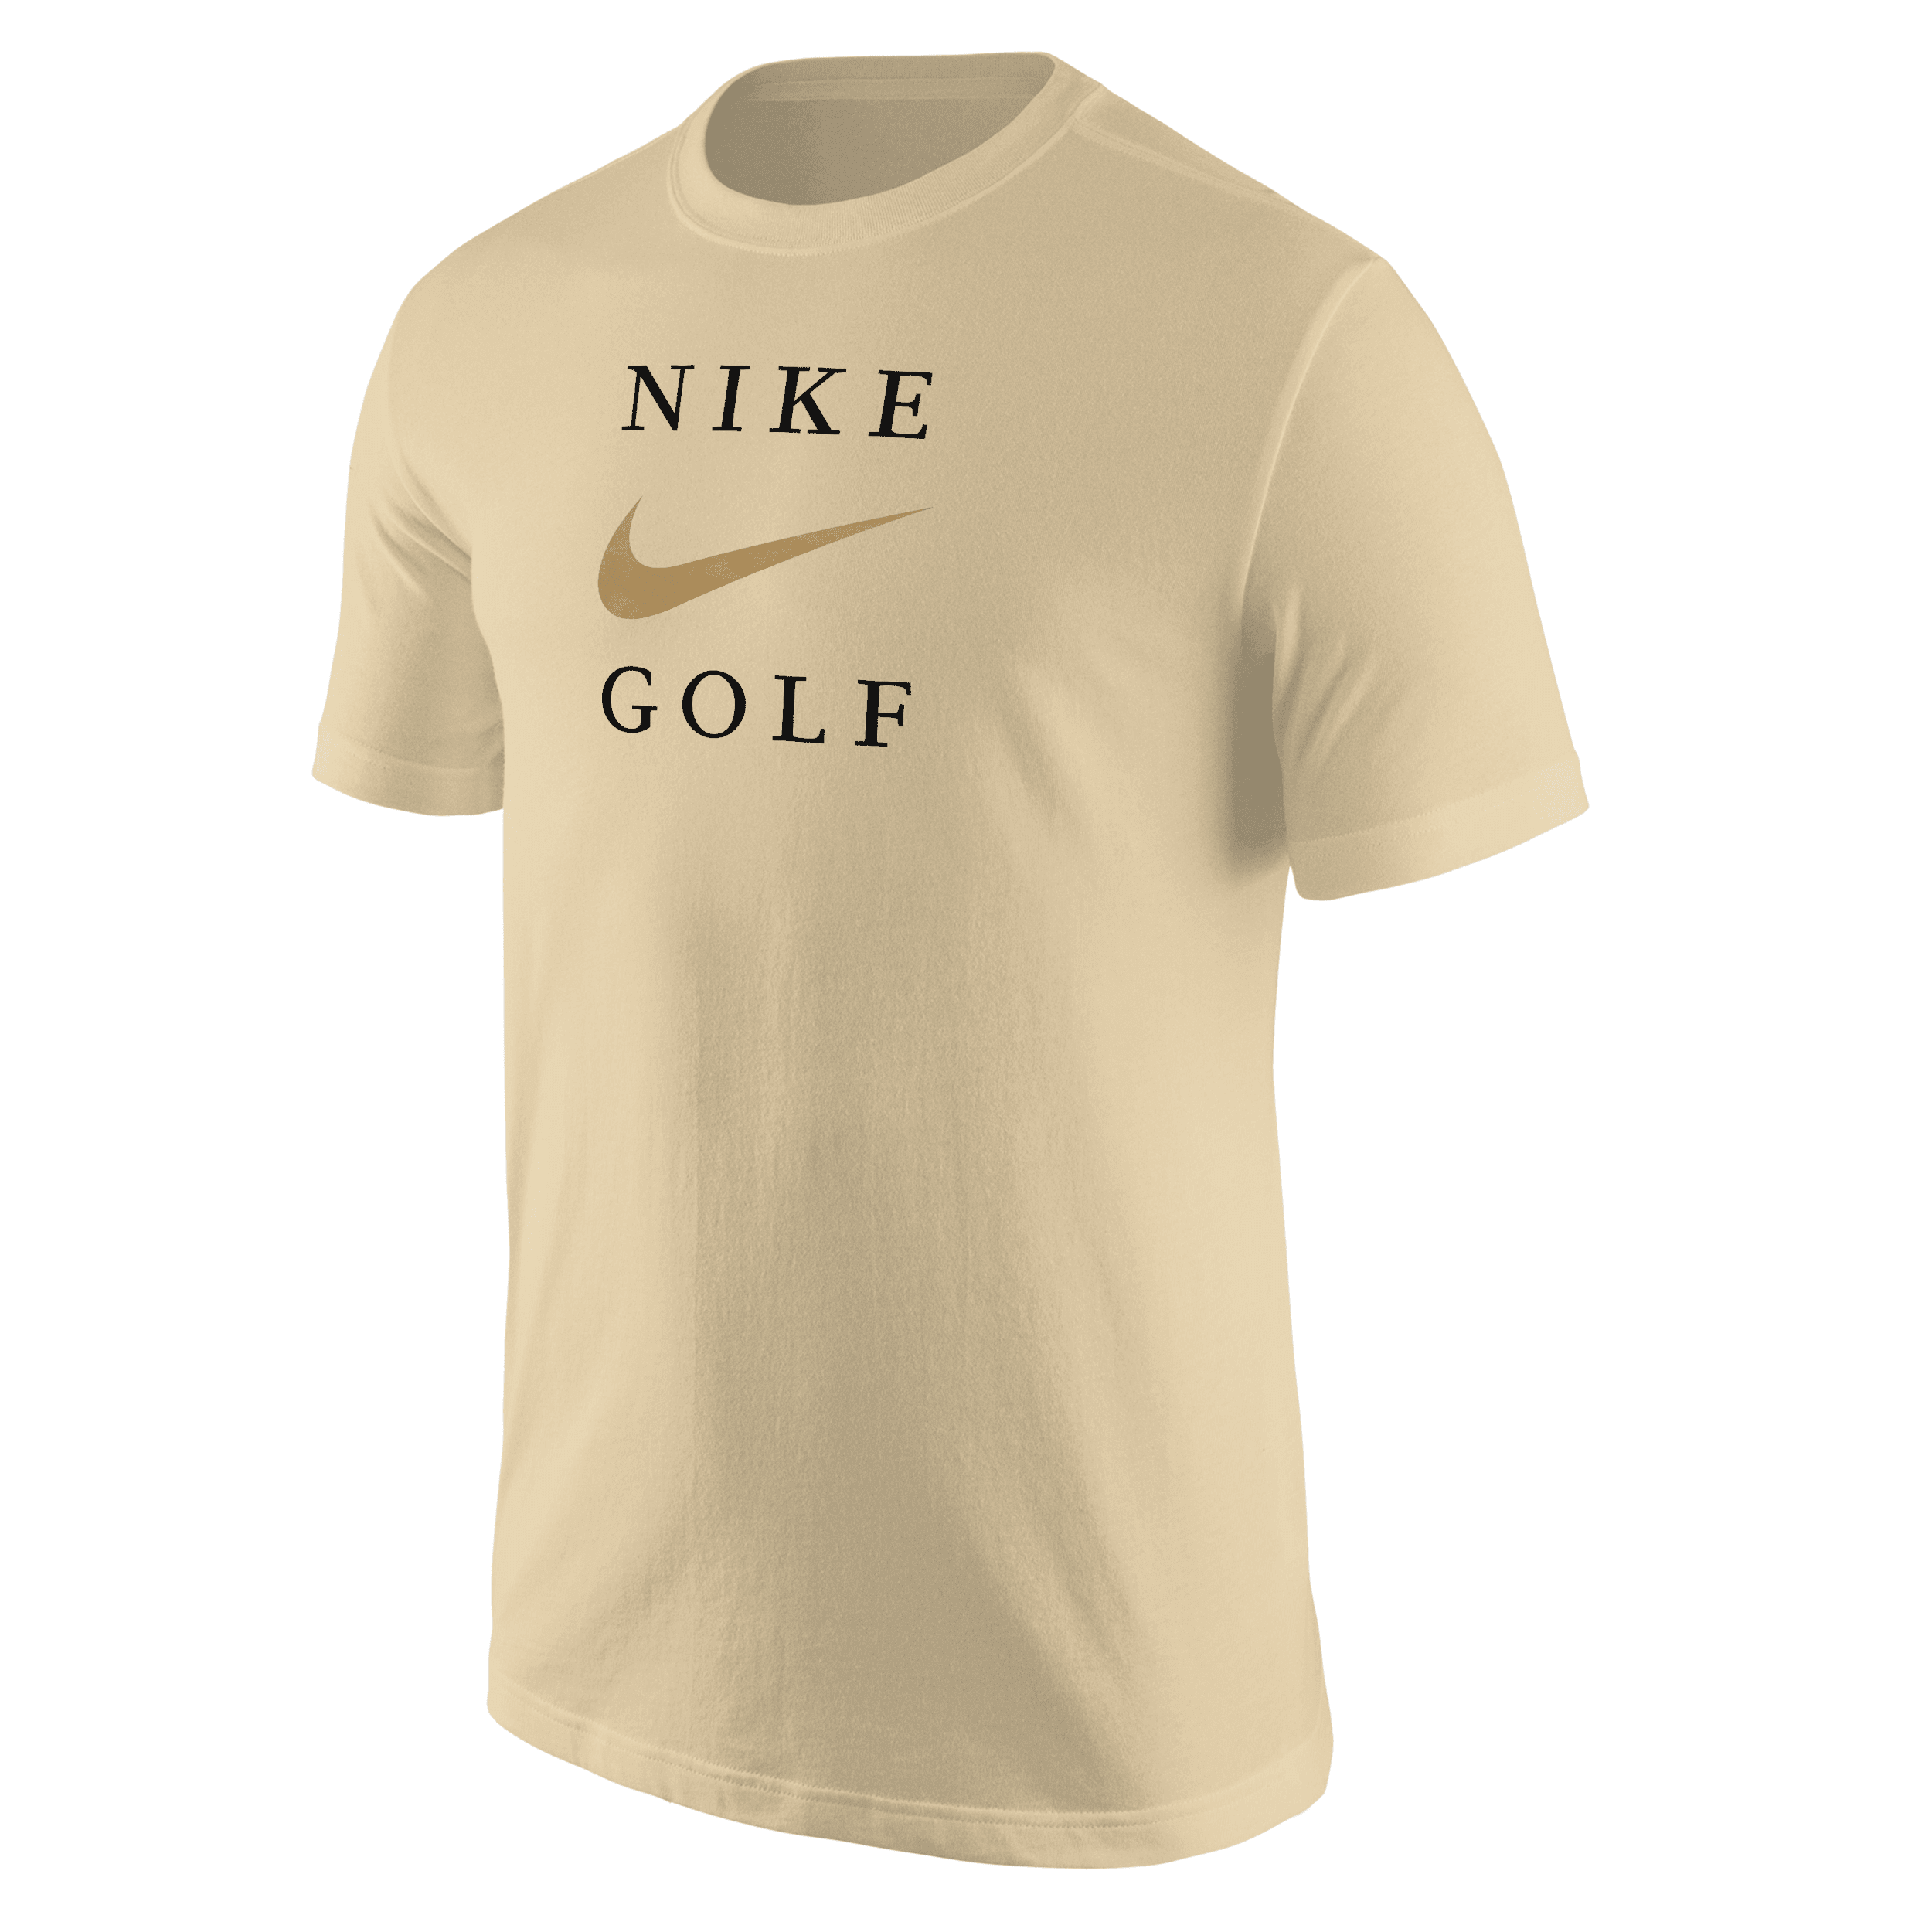 Nike Men's Golf T-shirt In Yellow